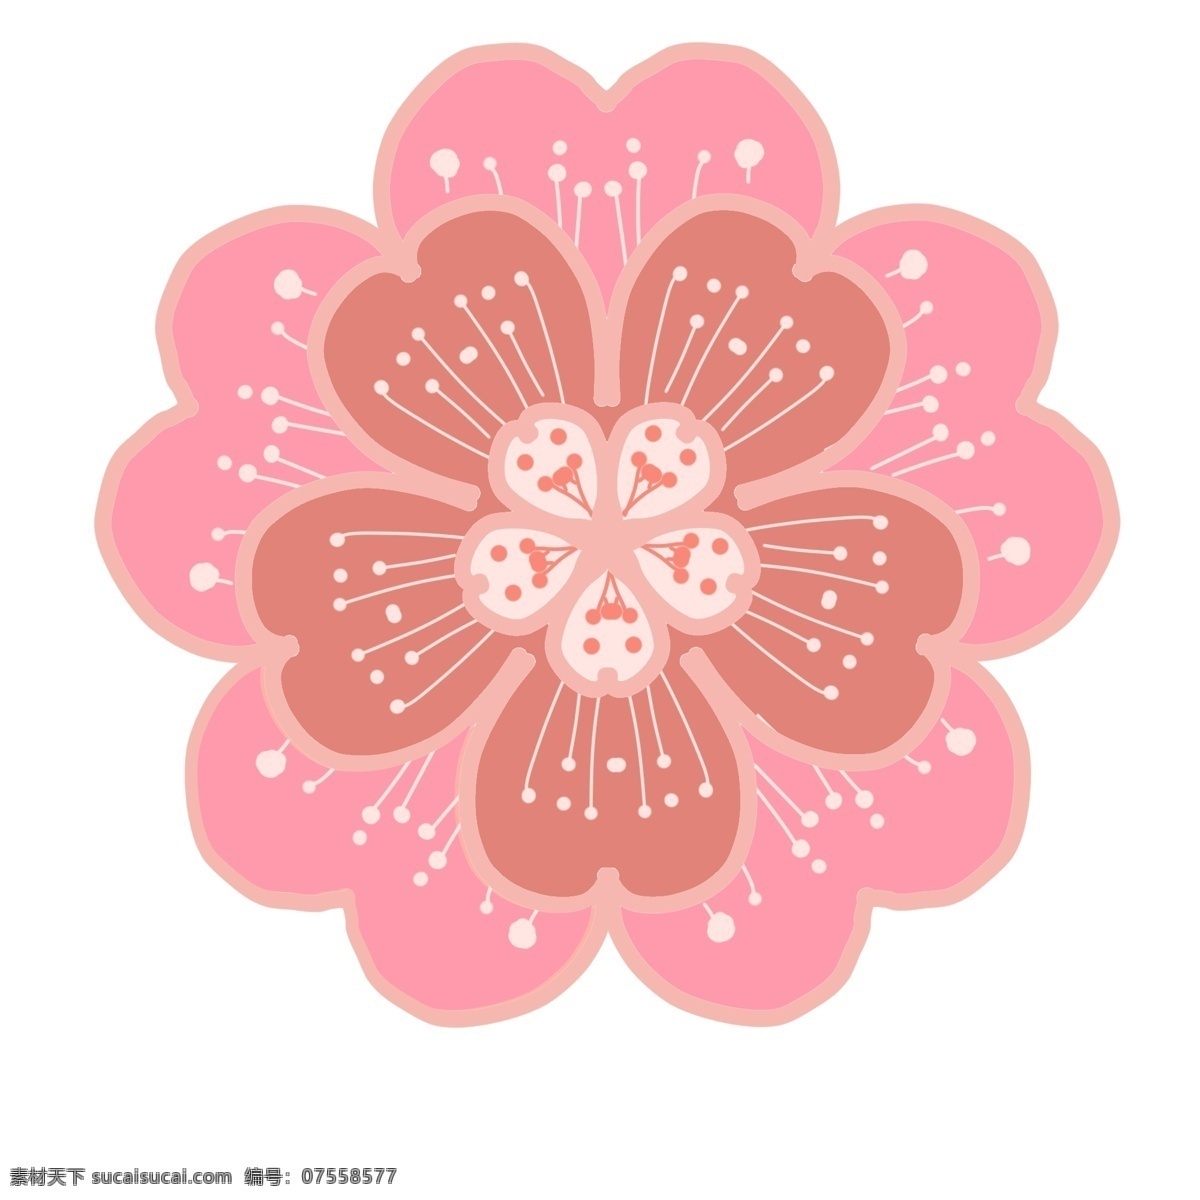 春天 粉色 樱花 插画 粉色樱花插画 白色花蕊插画 漂亮的樱花 花朵插画 日本樱花 五瓣花叶 植物